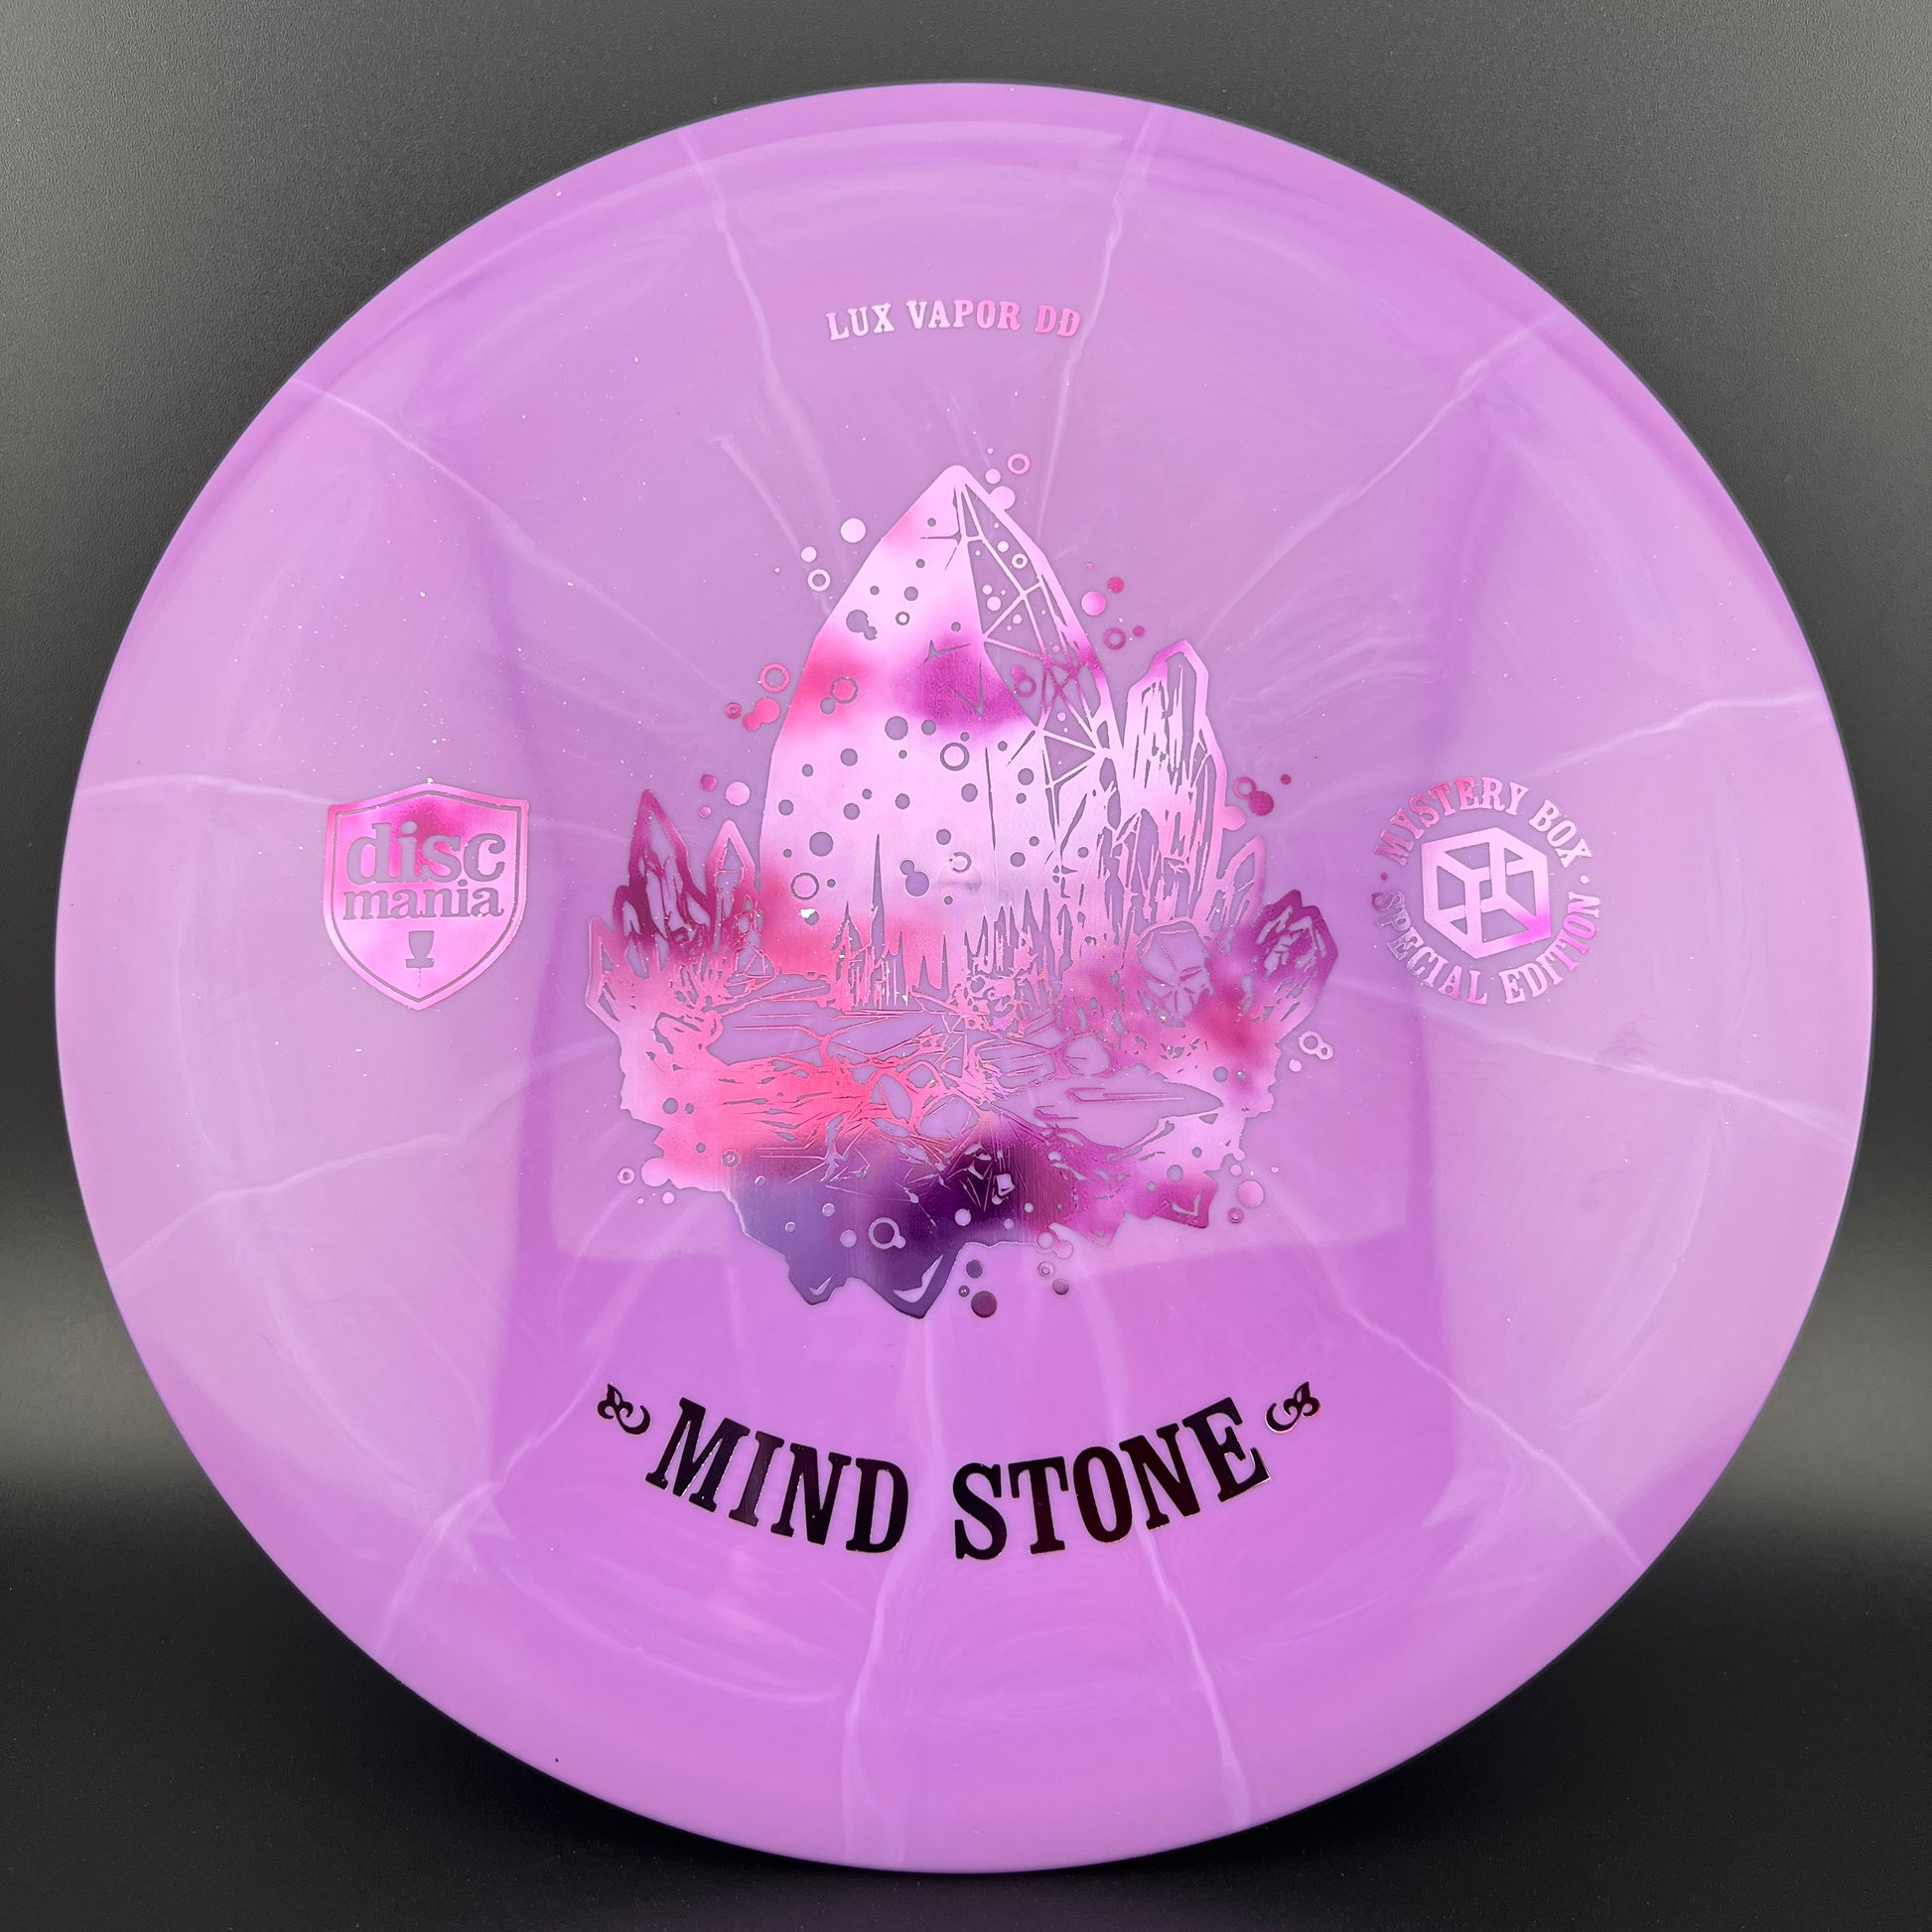 Lux Vapor DD - First Run - "Mind Stone" MB 23 Discmania